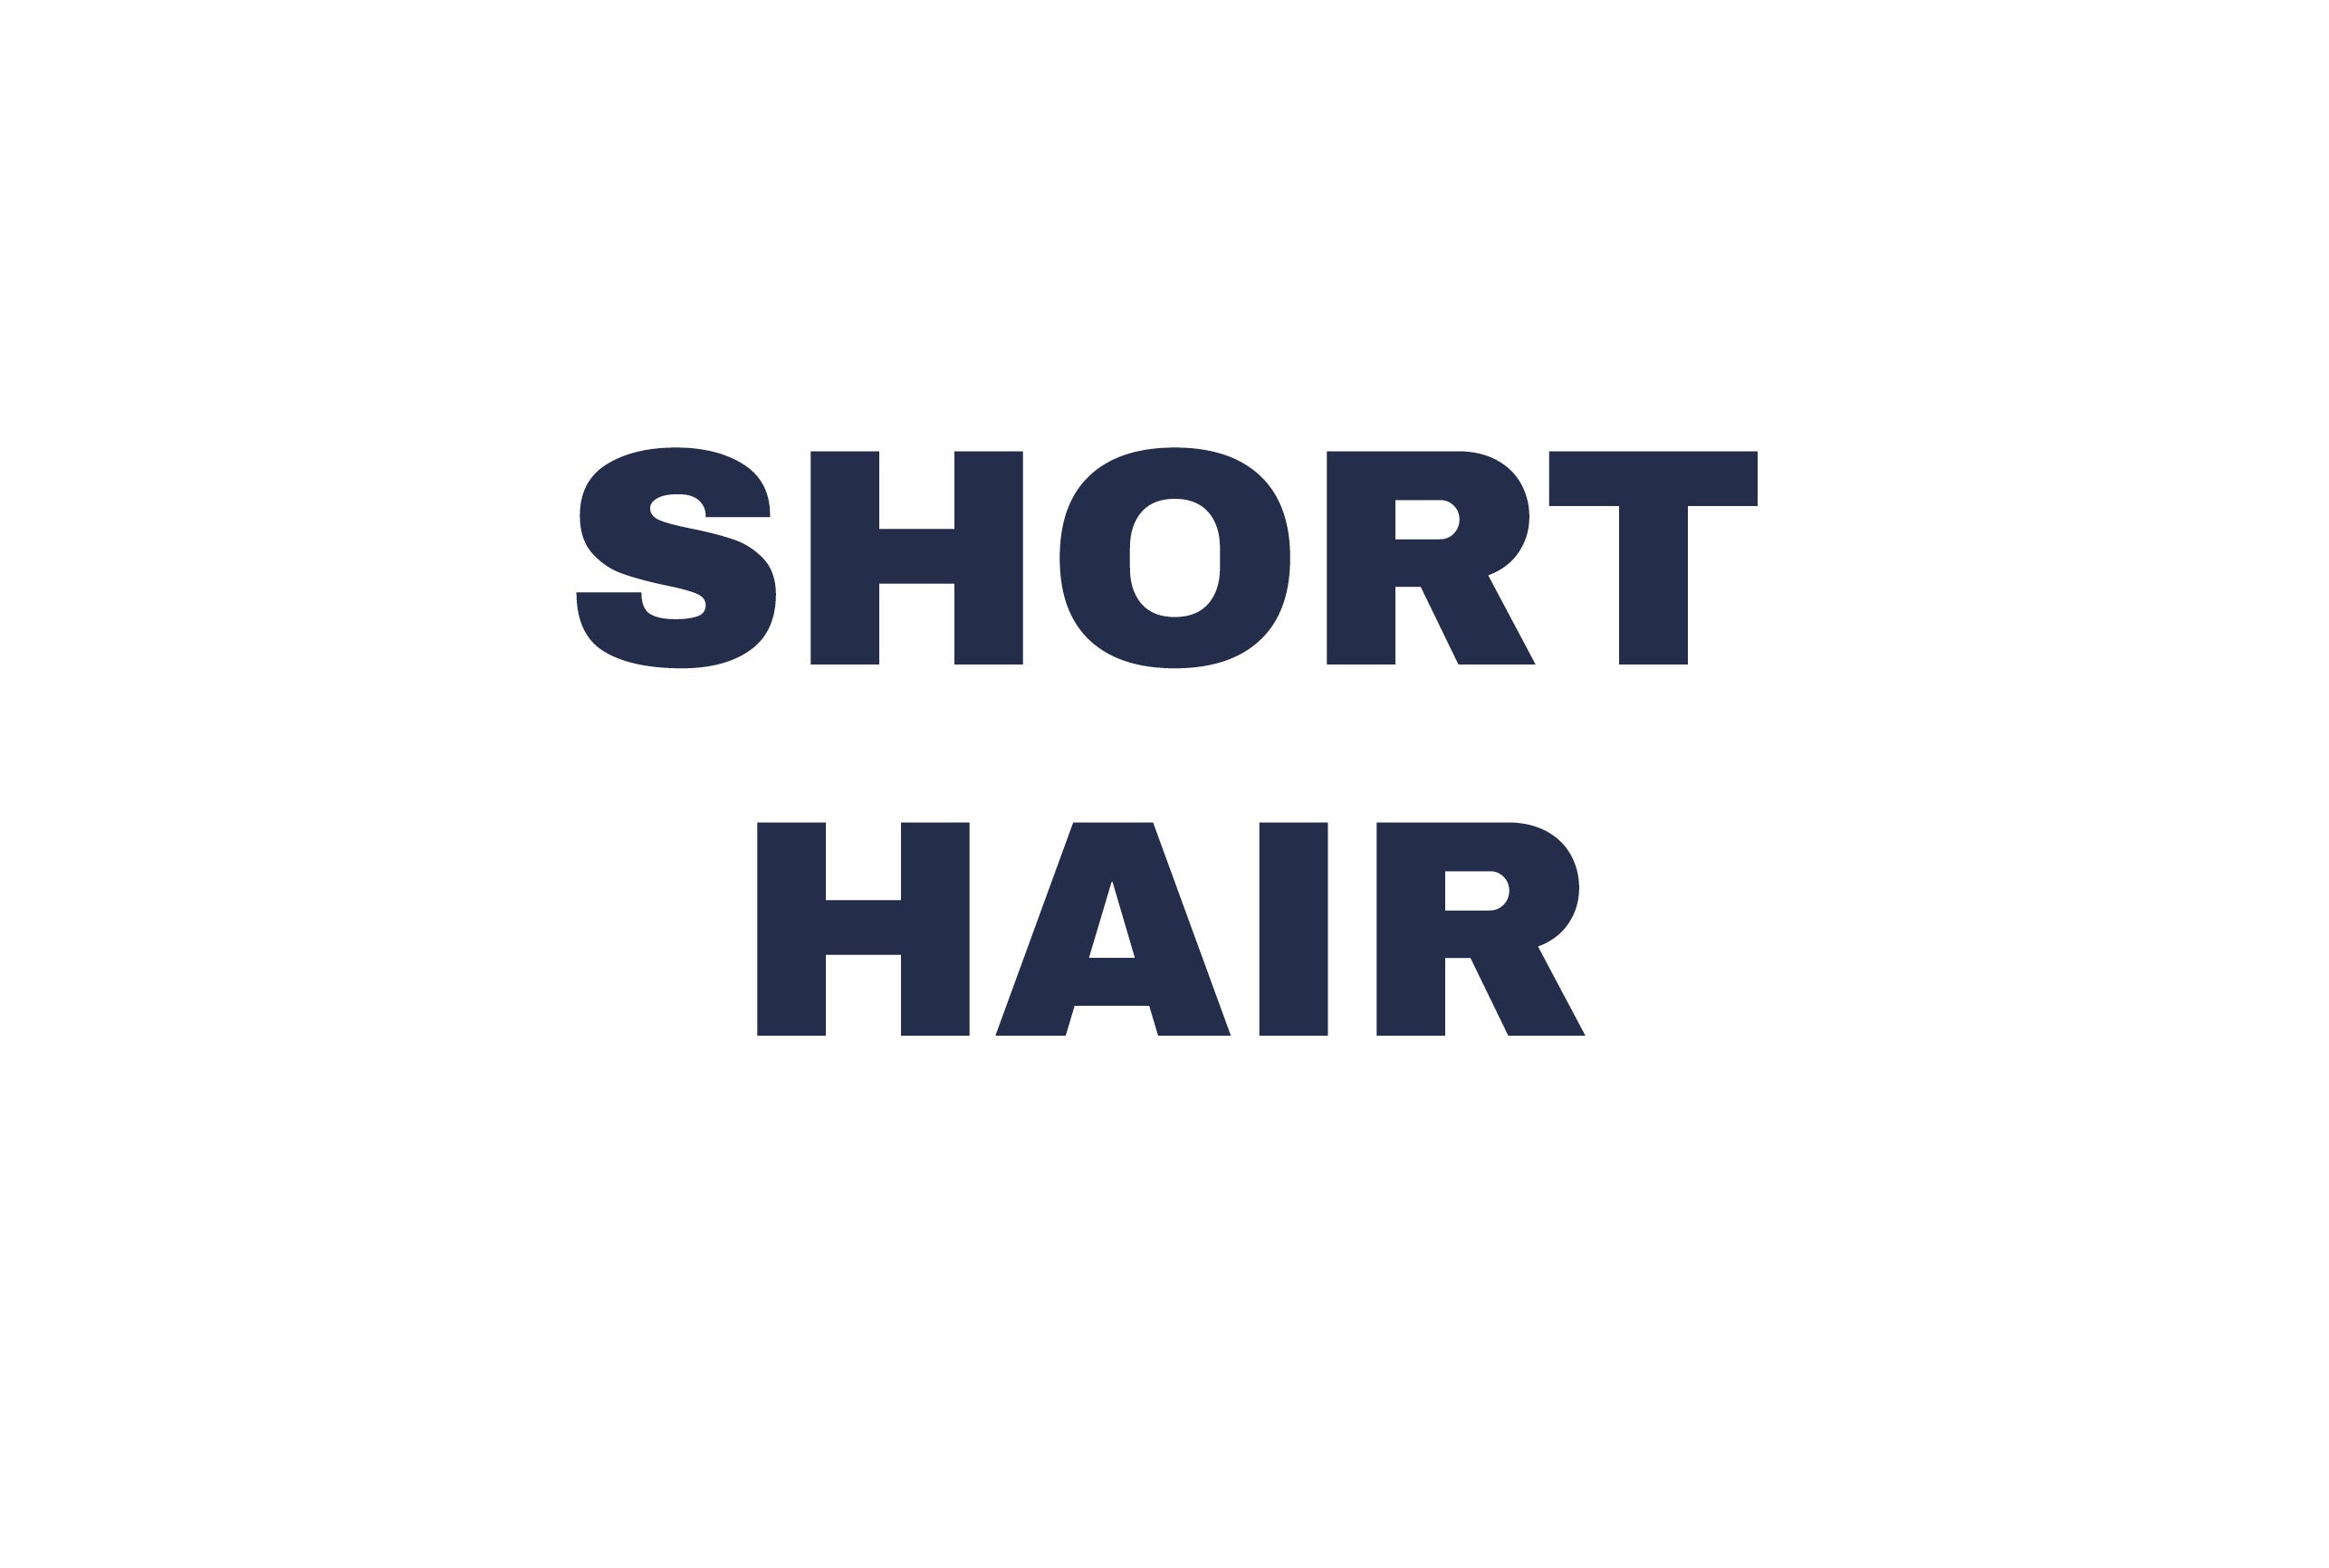 SHORT HAIR